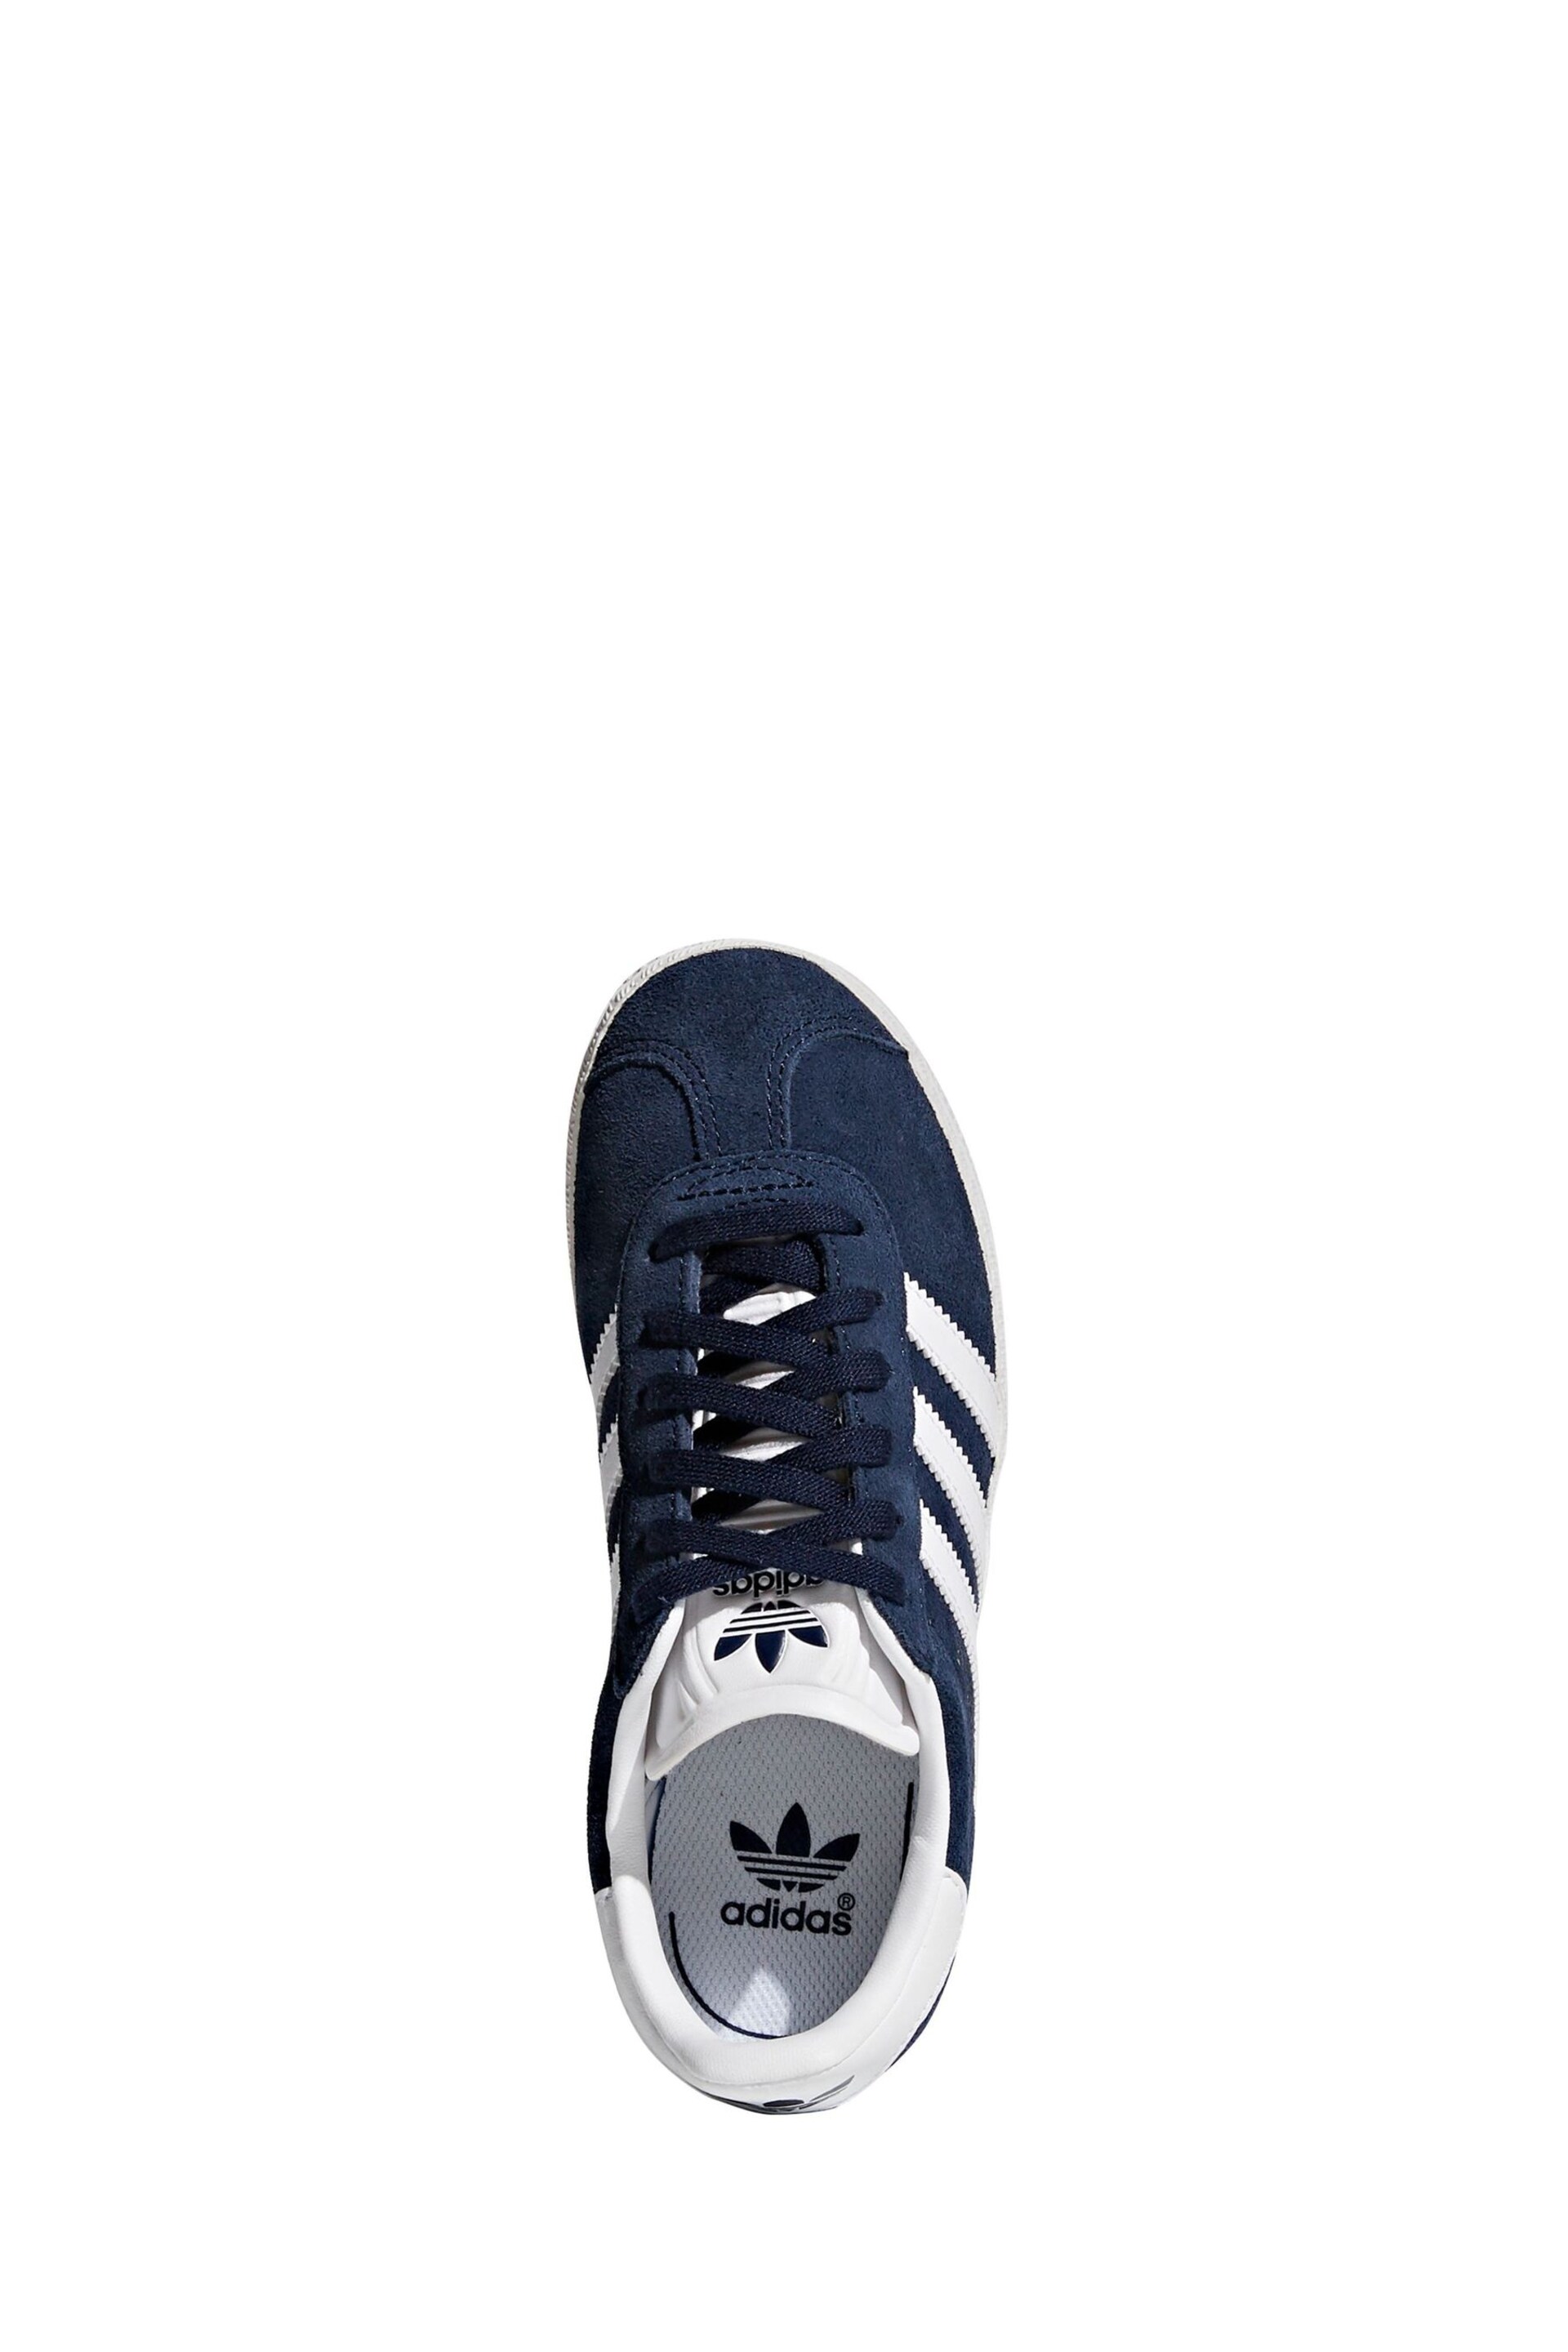 adidas Navy/White Gazelle Shoes - Image 5 of 9